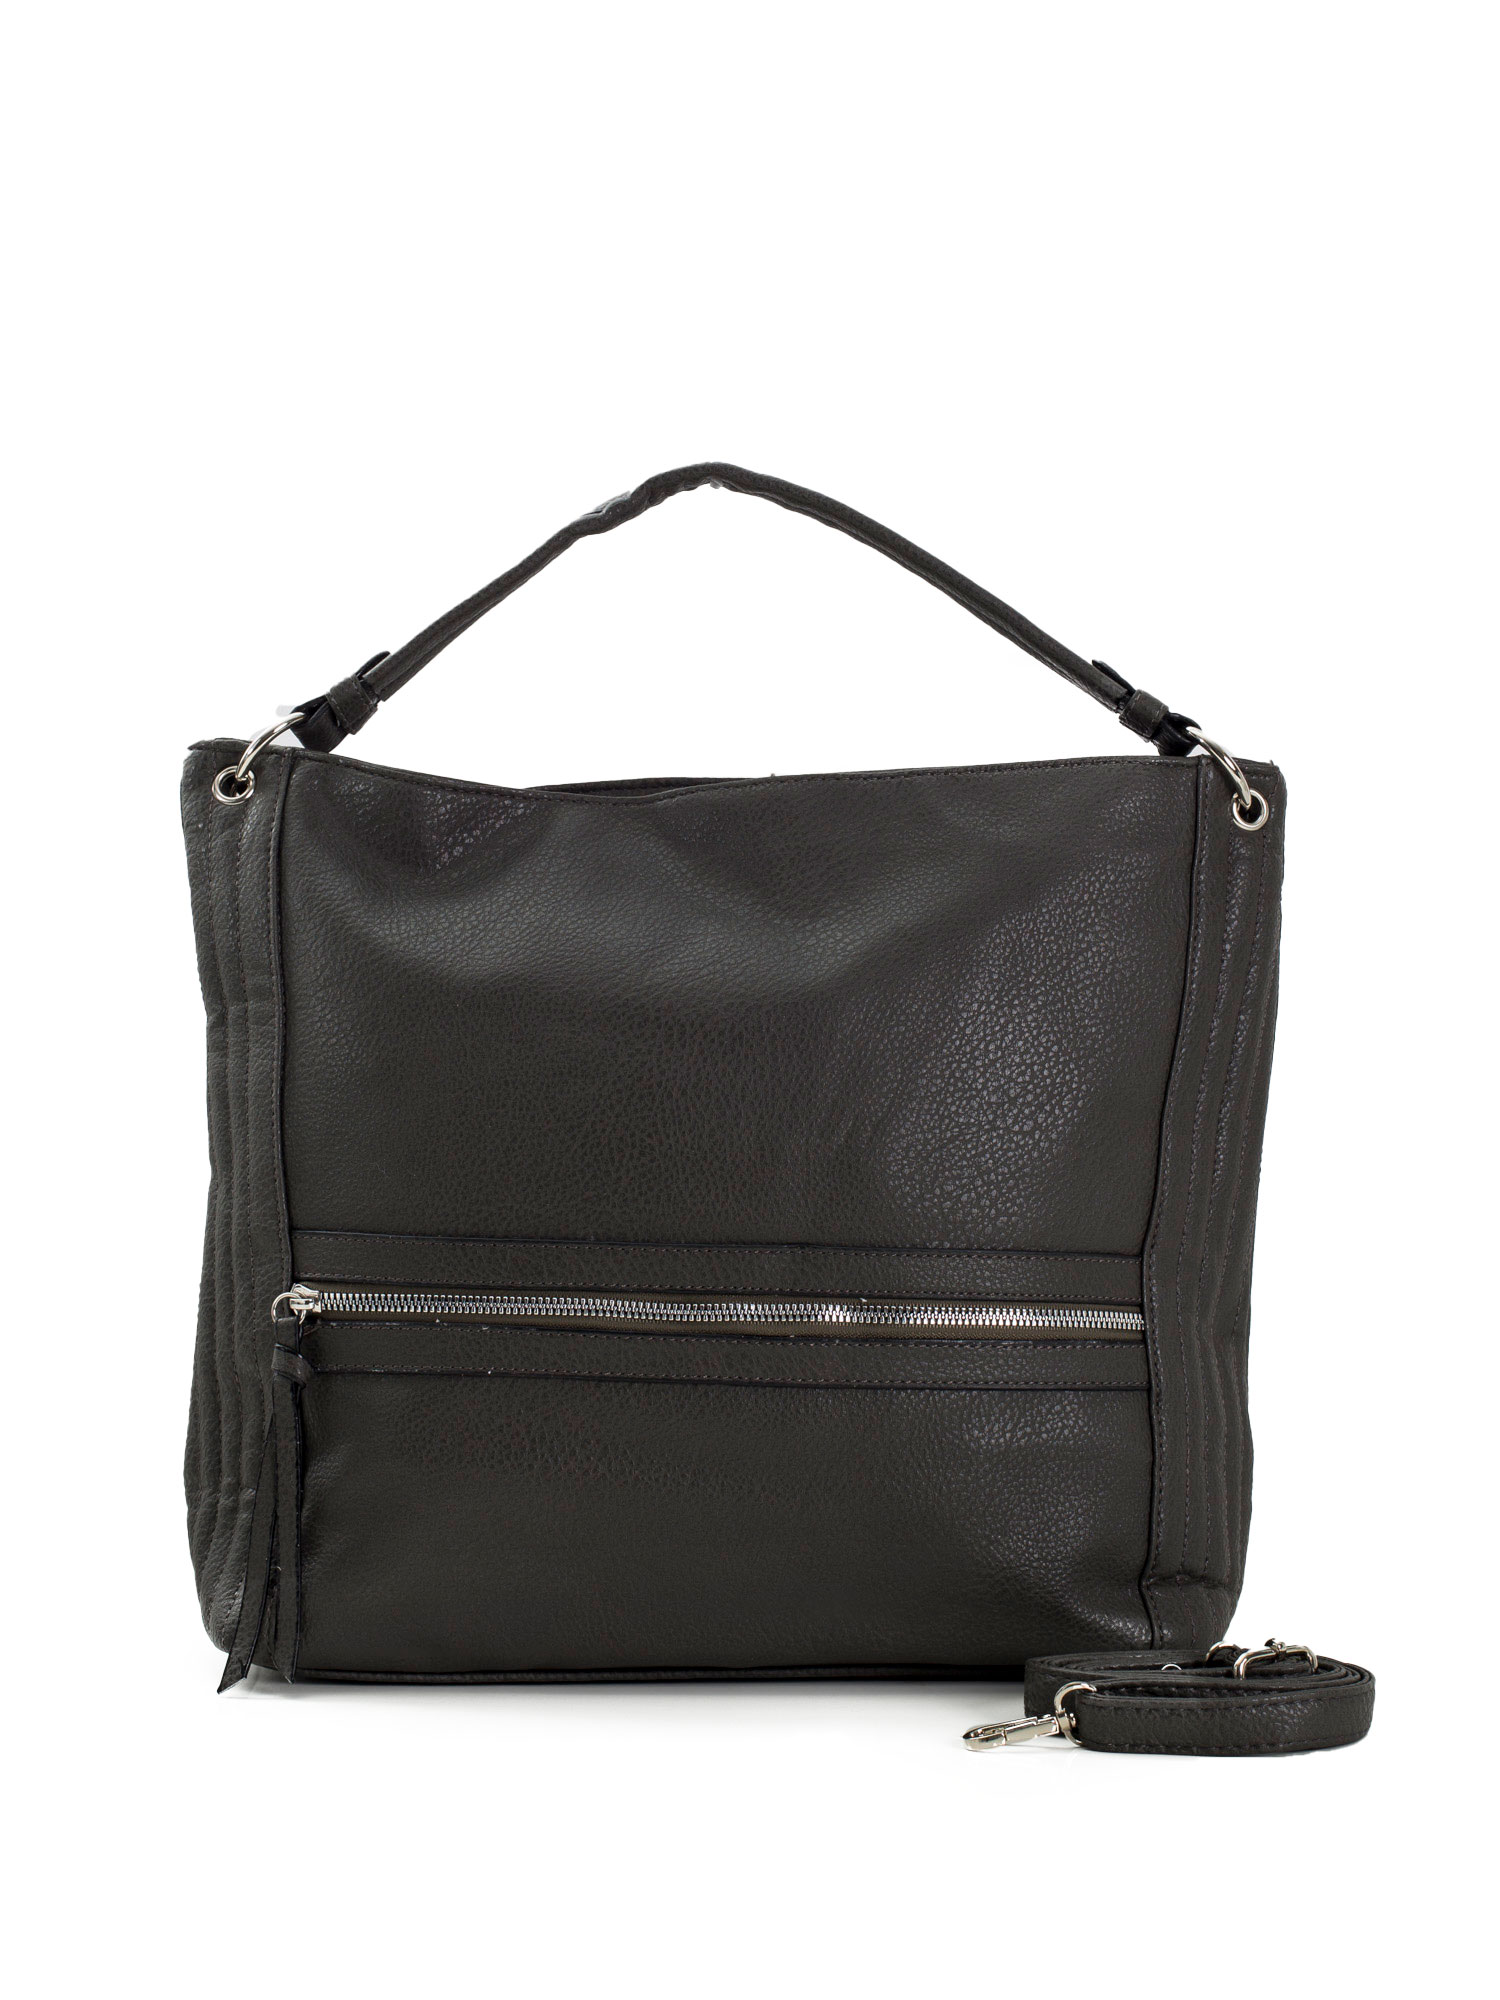 Dark gray women's bag with handle